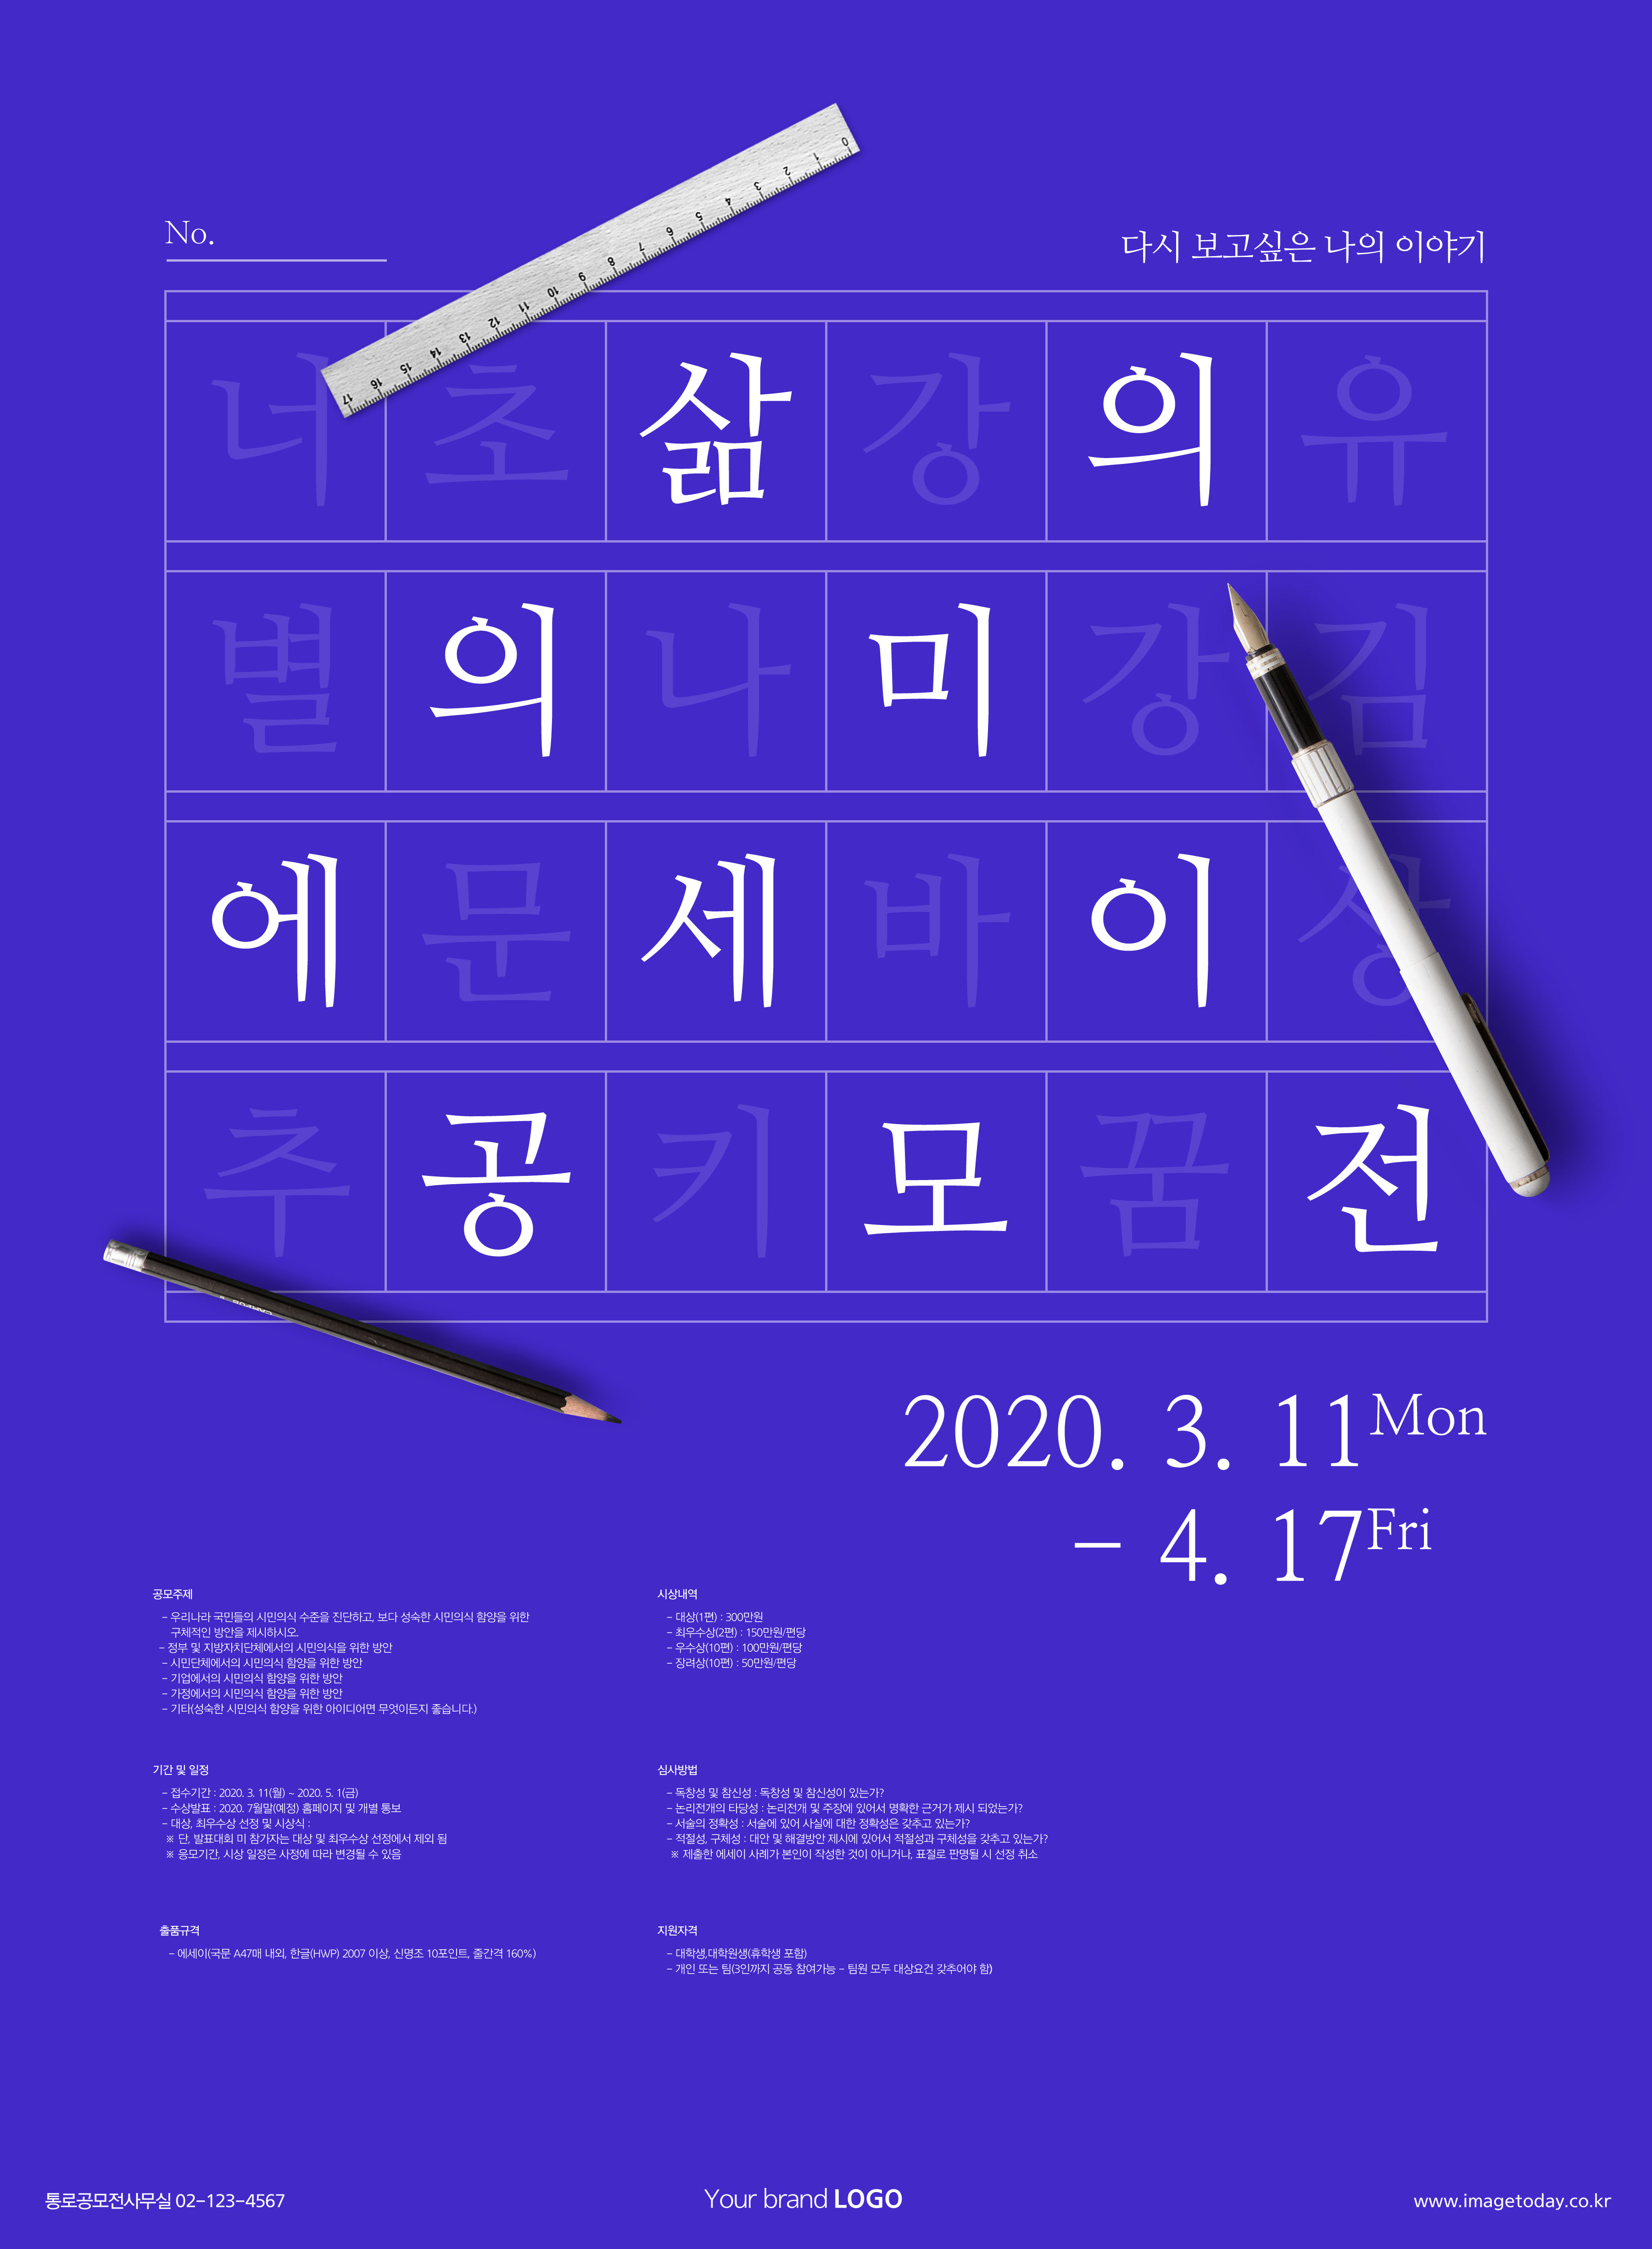 学习测试主题海报PSD素材非凡图库精选韩国psd素材插图